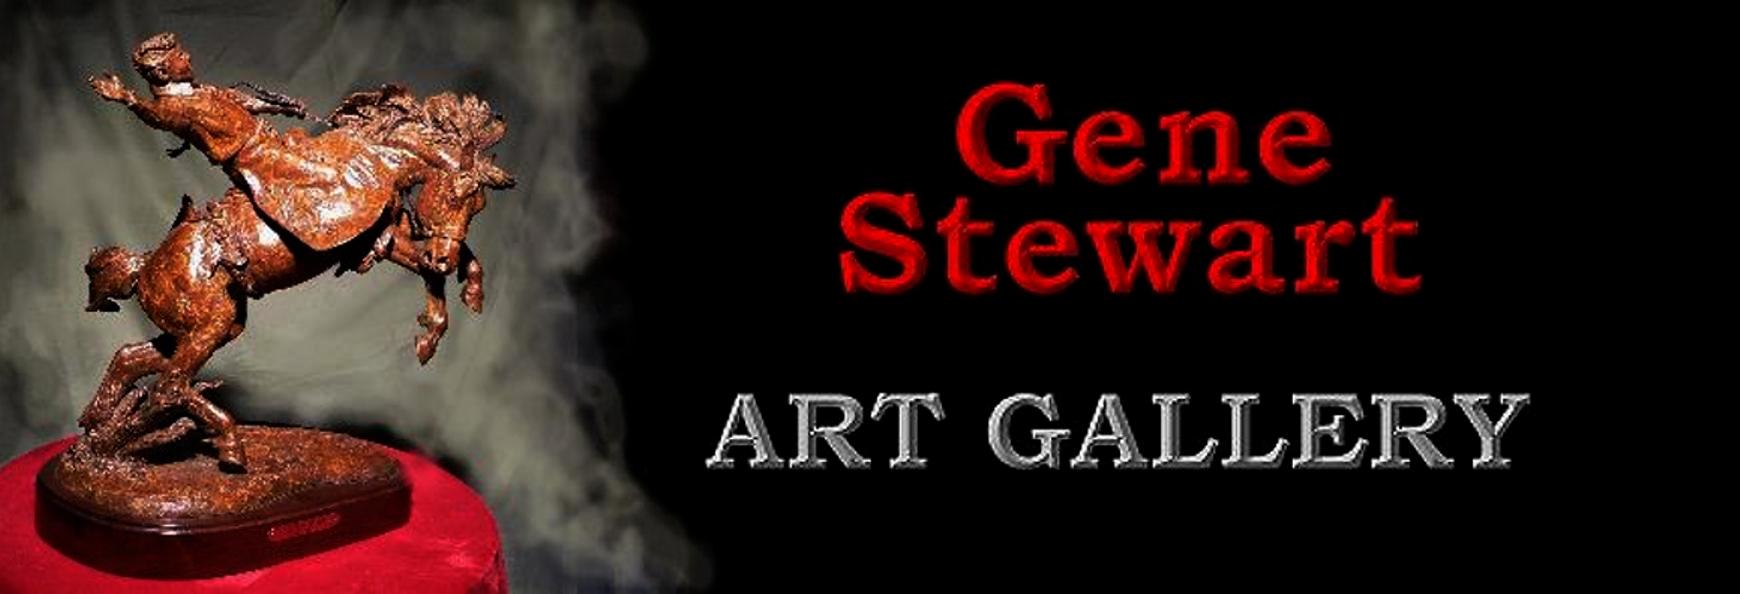 Gene Stewart Art Gallery,link